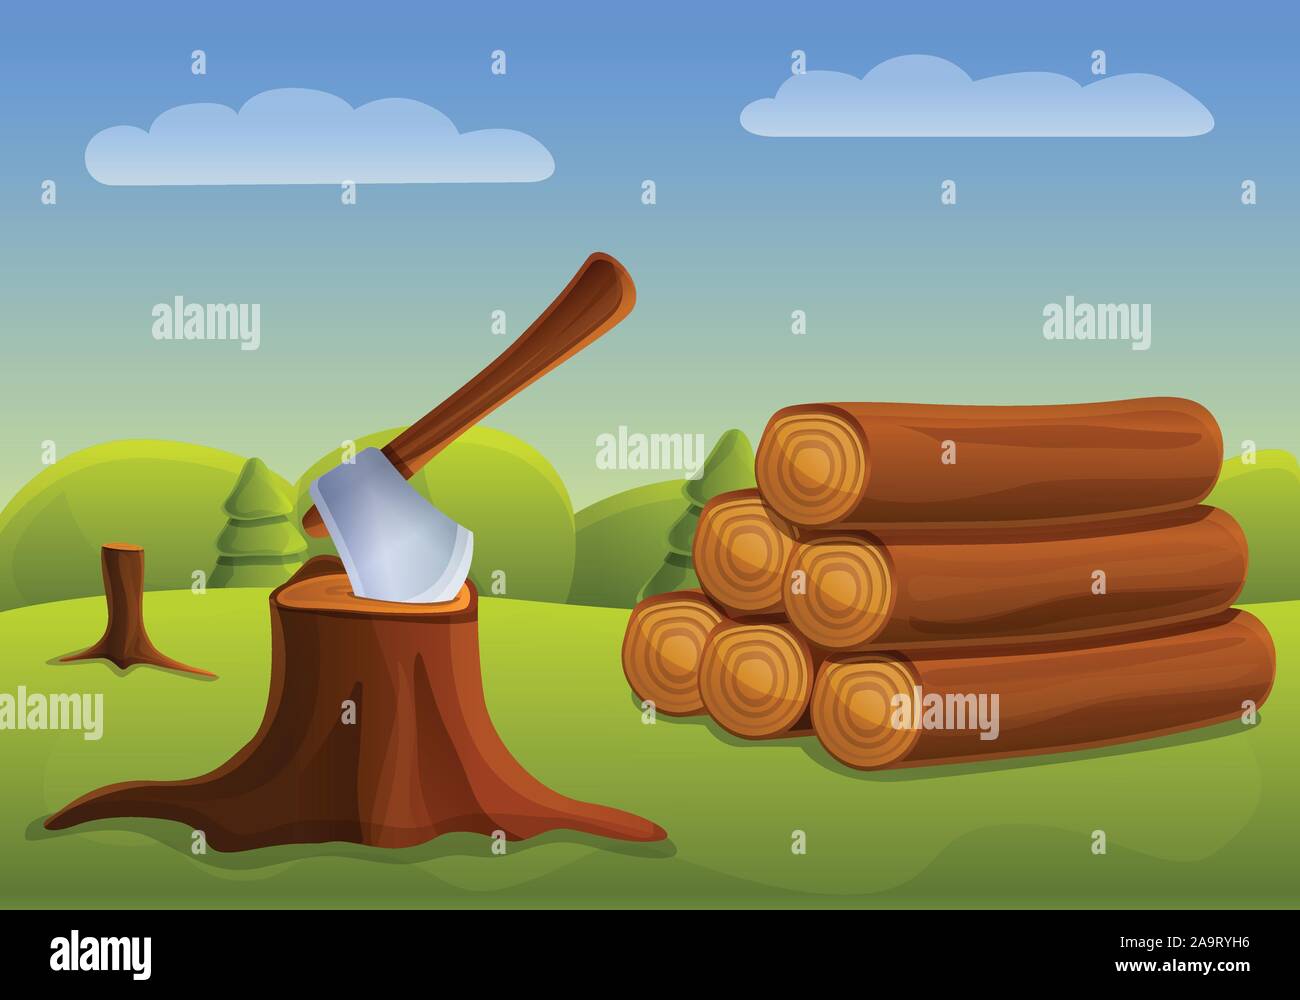 Schnitt unten Wald Konzept Banner. Cartoon Illustration des Waldes vektor Konzept Banner für Web Design Stock Vektor